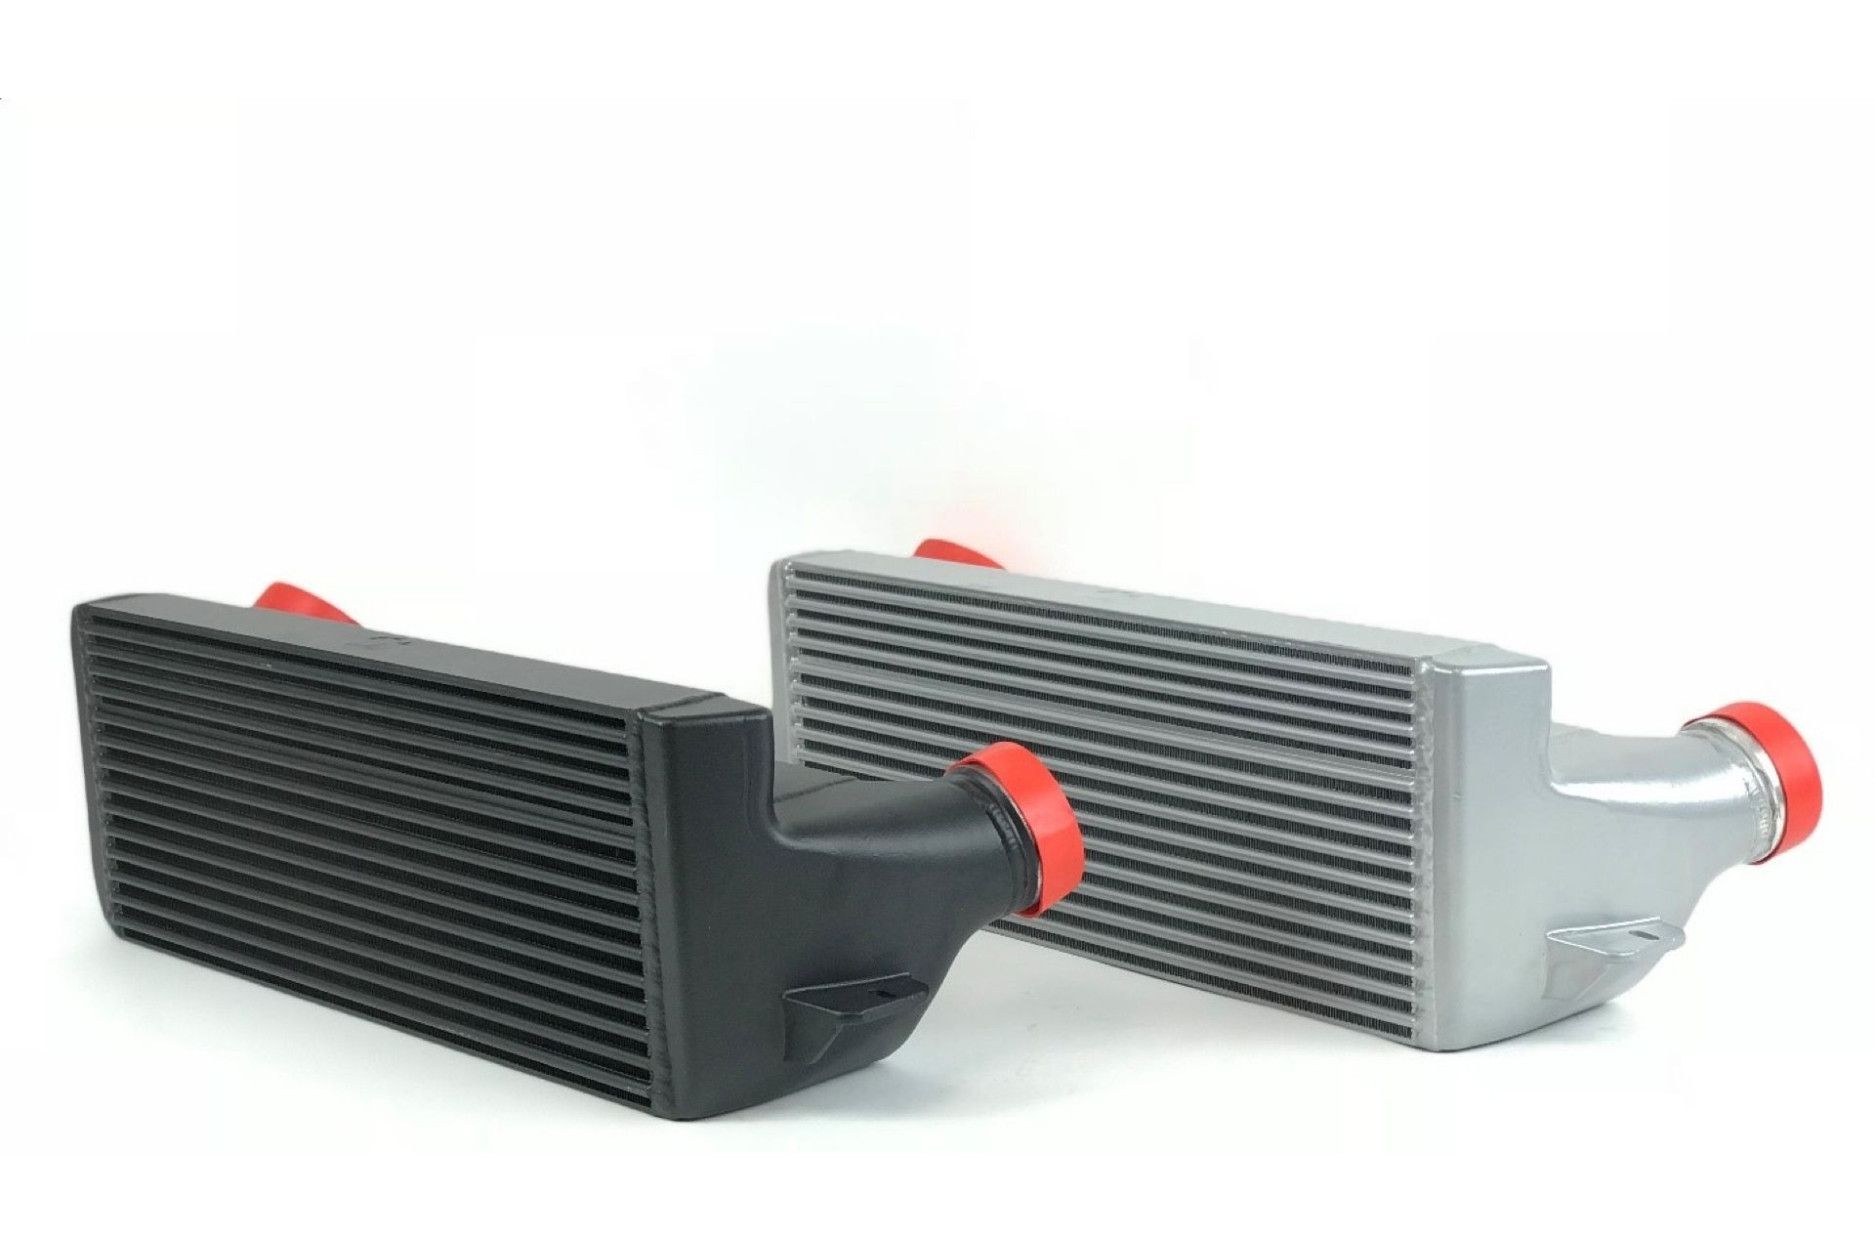 CSF N54 Ladeluftkühler für BMW N54/N55 E-Serie - online kaufen bei CFD